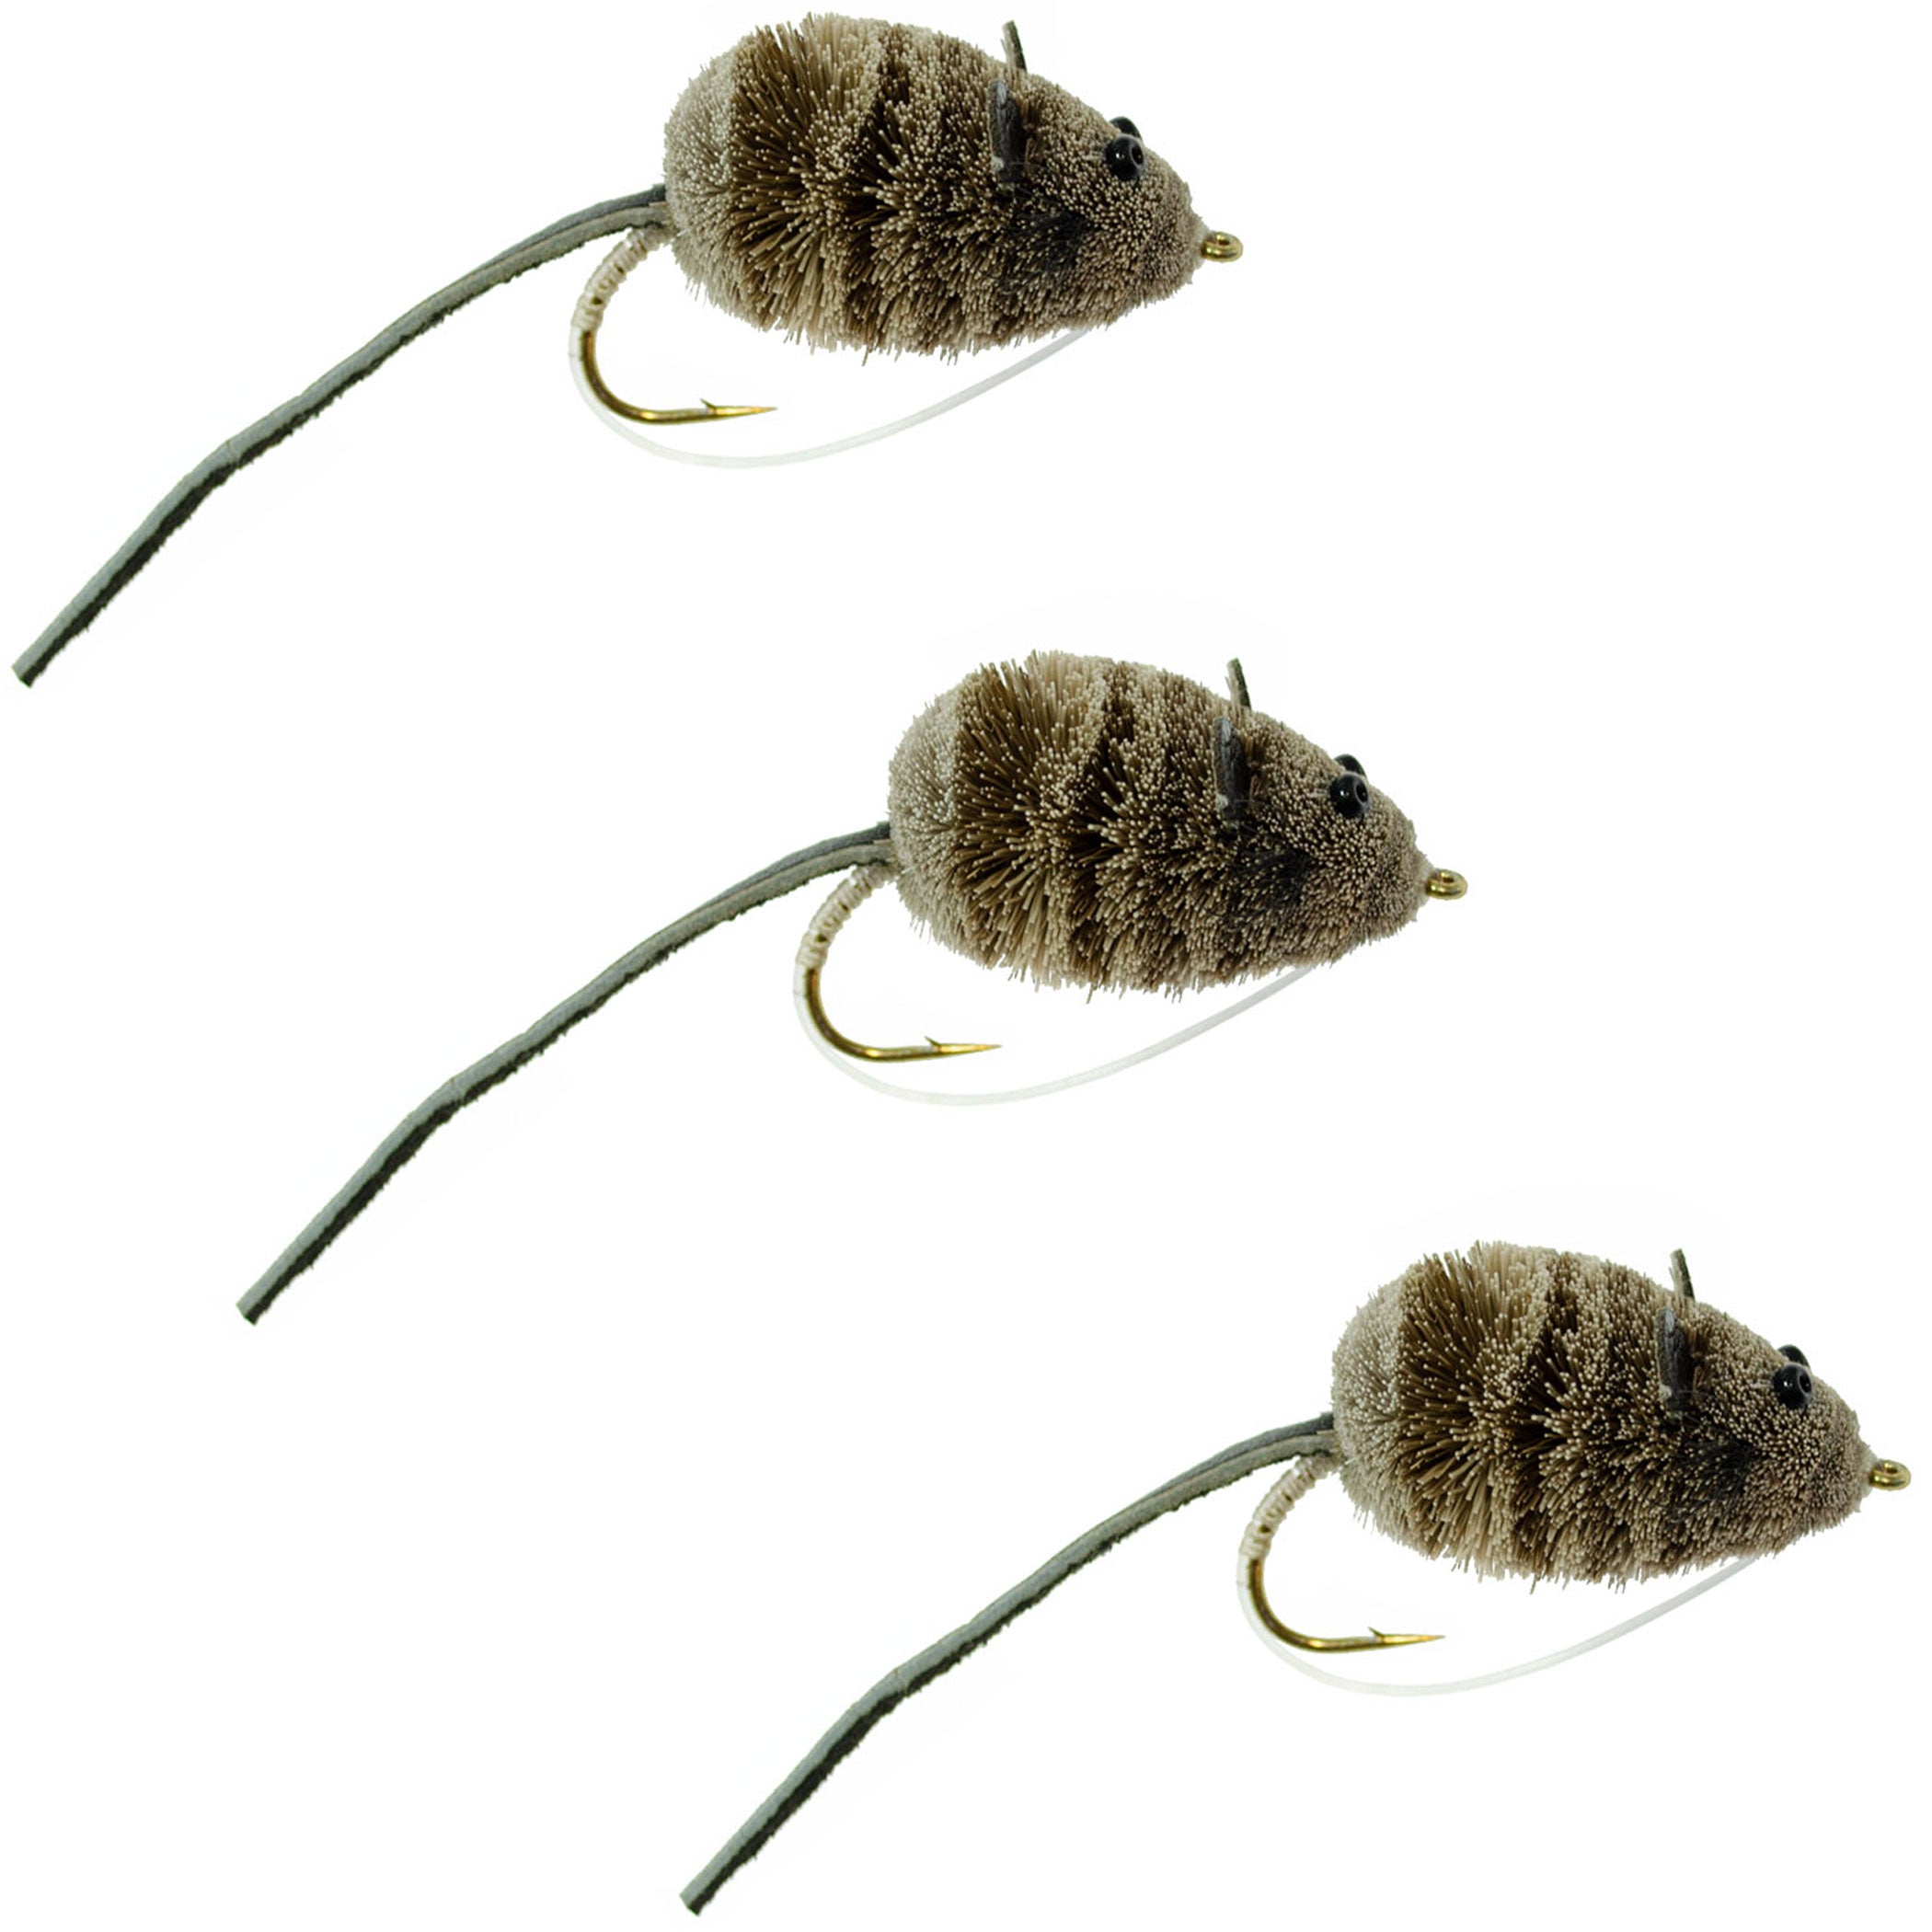 Paquete de 3 insectos de pelo de ciervo Mighty Mouse, tamaño 4, anzuelos anchos para pesca con mosca, con protector contra malas hierbas